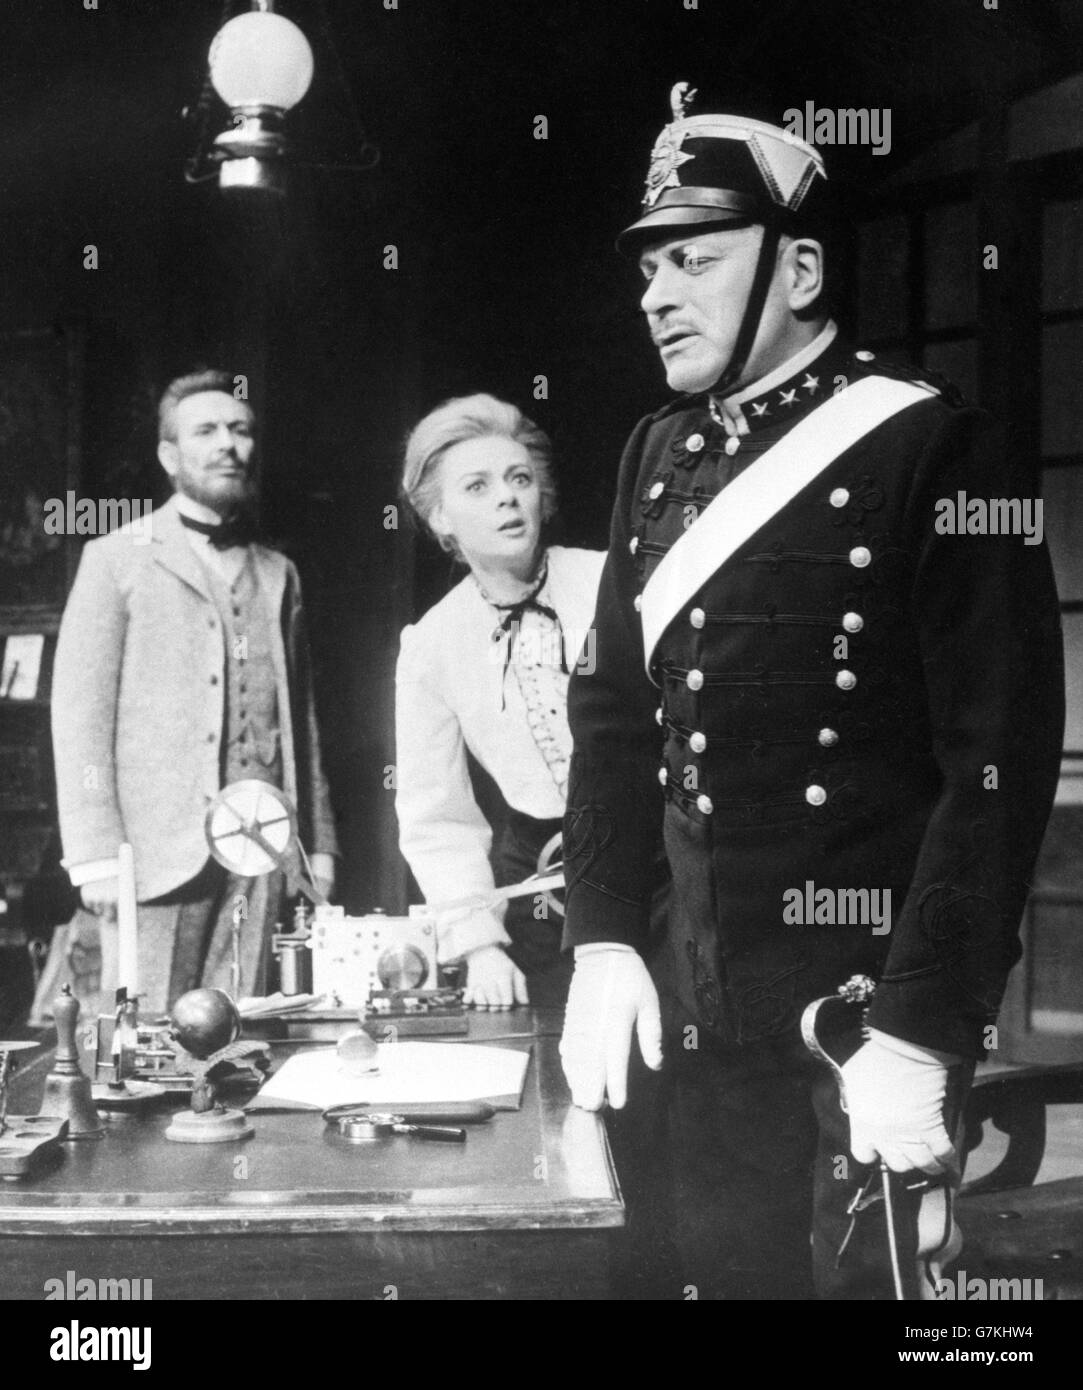 Der britische Schauspieler Sir Laurence Olivier (r), der Edgar spielt, in einer Szene aus der Wiederbelebung von August Strindbergs „Dance of Death“ in London durch die National Theatre Company. Ebenfalls in der Szene sind Robert Stephens (l.), der Kurt spielt, und Geraldine McEwan als Alice. Stockfoto